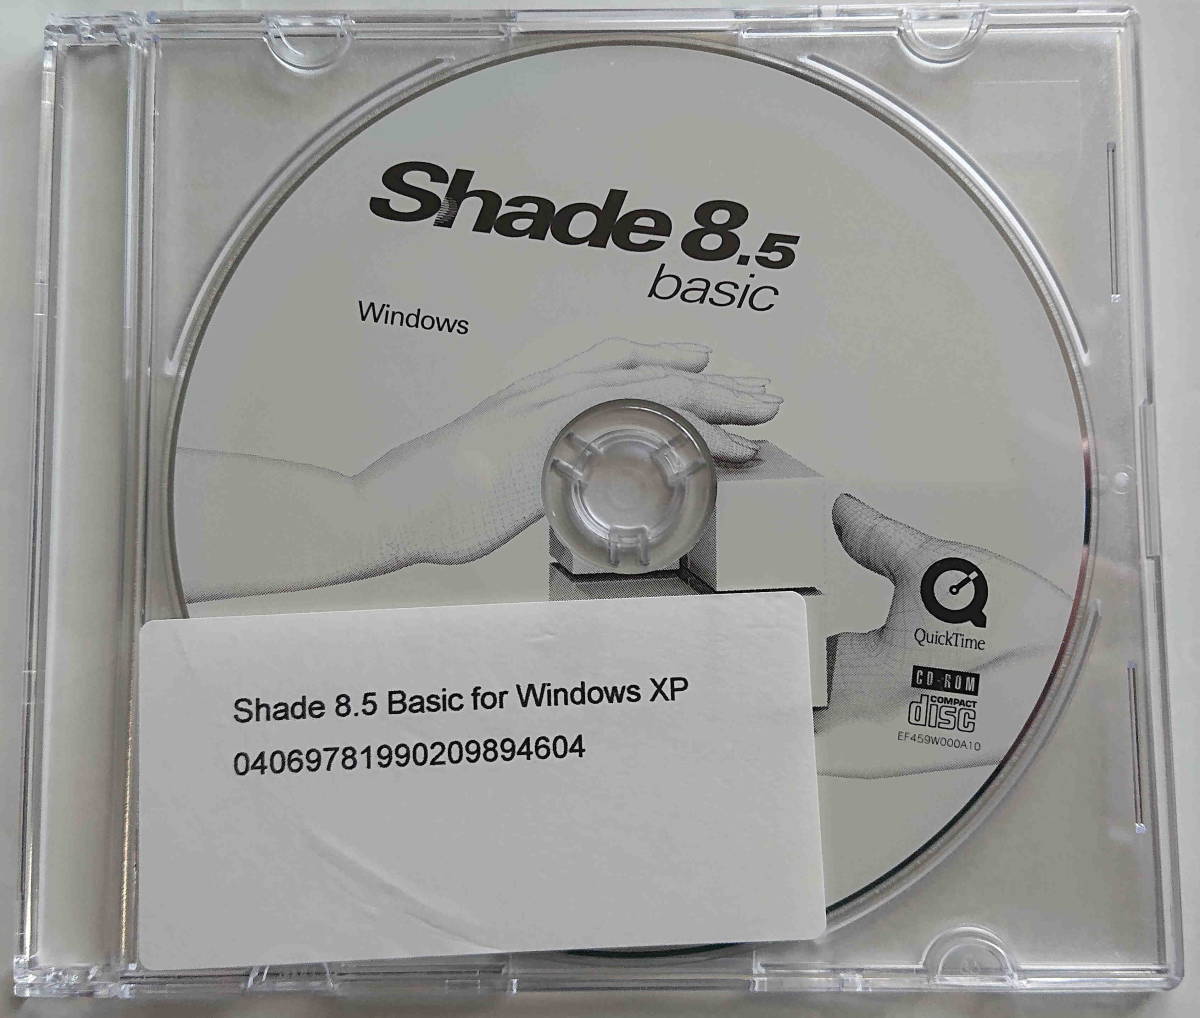 Shade 8 путеводитель 3DCG произведение Technica ru гид & начинающий zchu-to настоящий (2 шт. ) / CD есть 